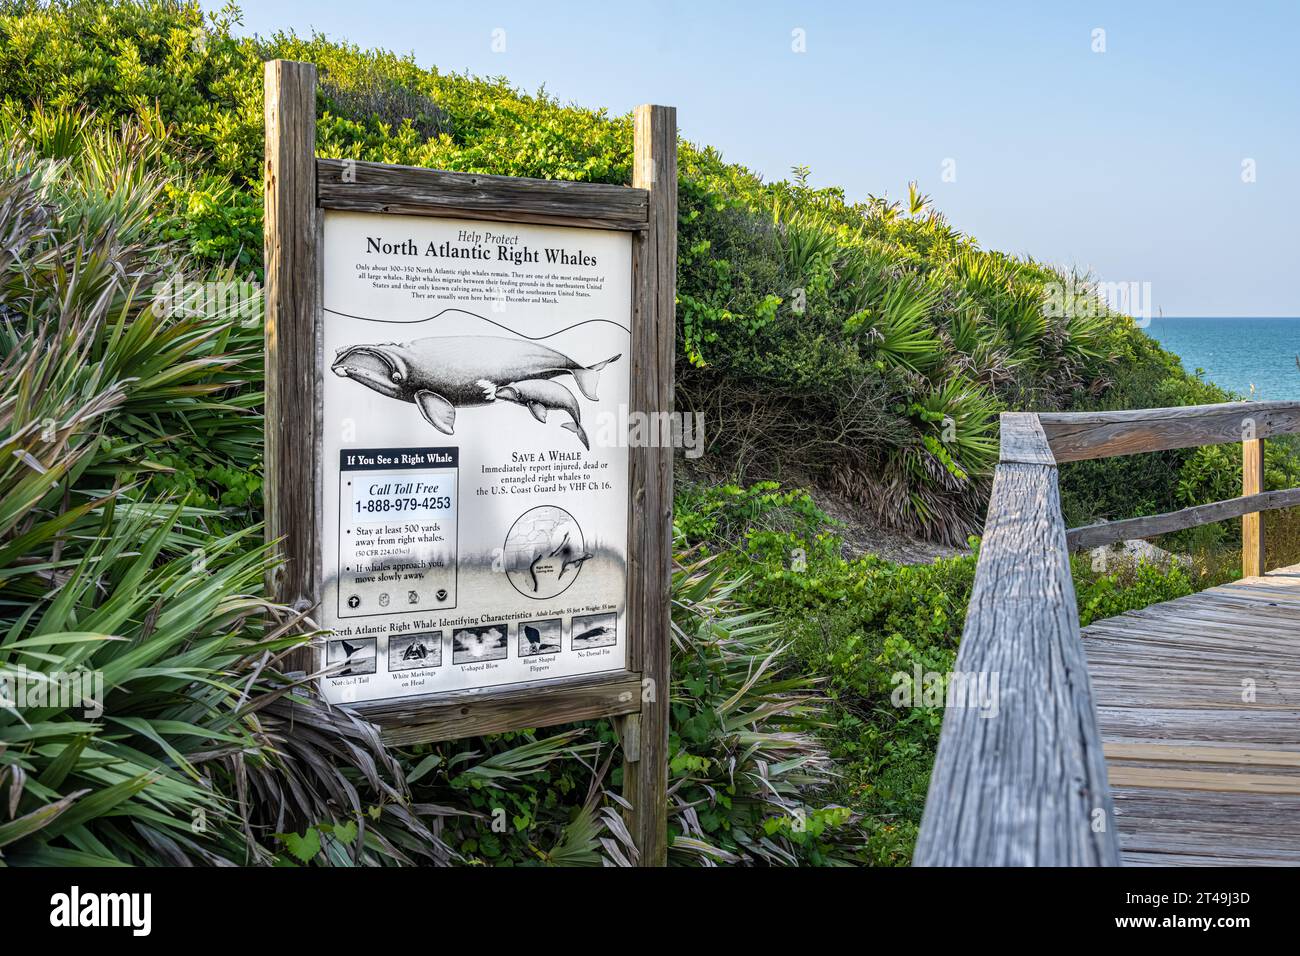 Panneau d'information le long de l'accès à la plage publique à Ponte Vedra Beach, Floride, sur les baleines noires de l'Atlantique Nord. (ÉTATS-UNIS) Banque D'Images